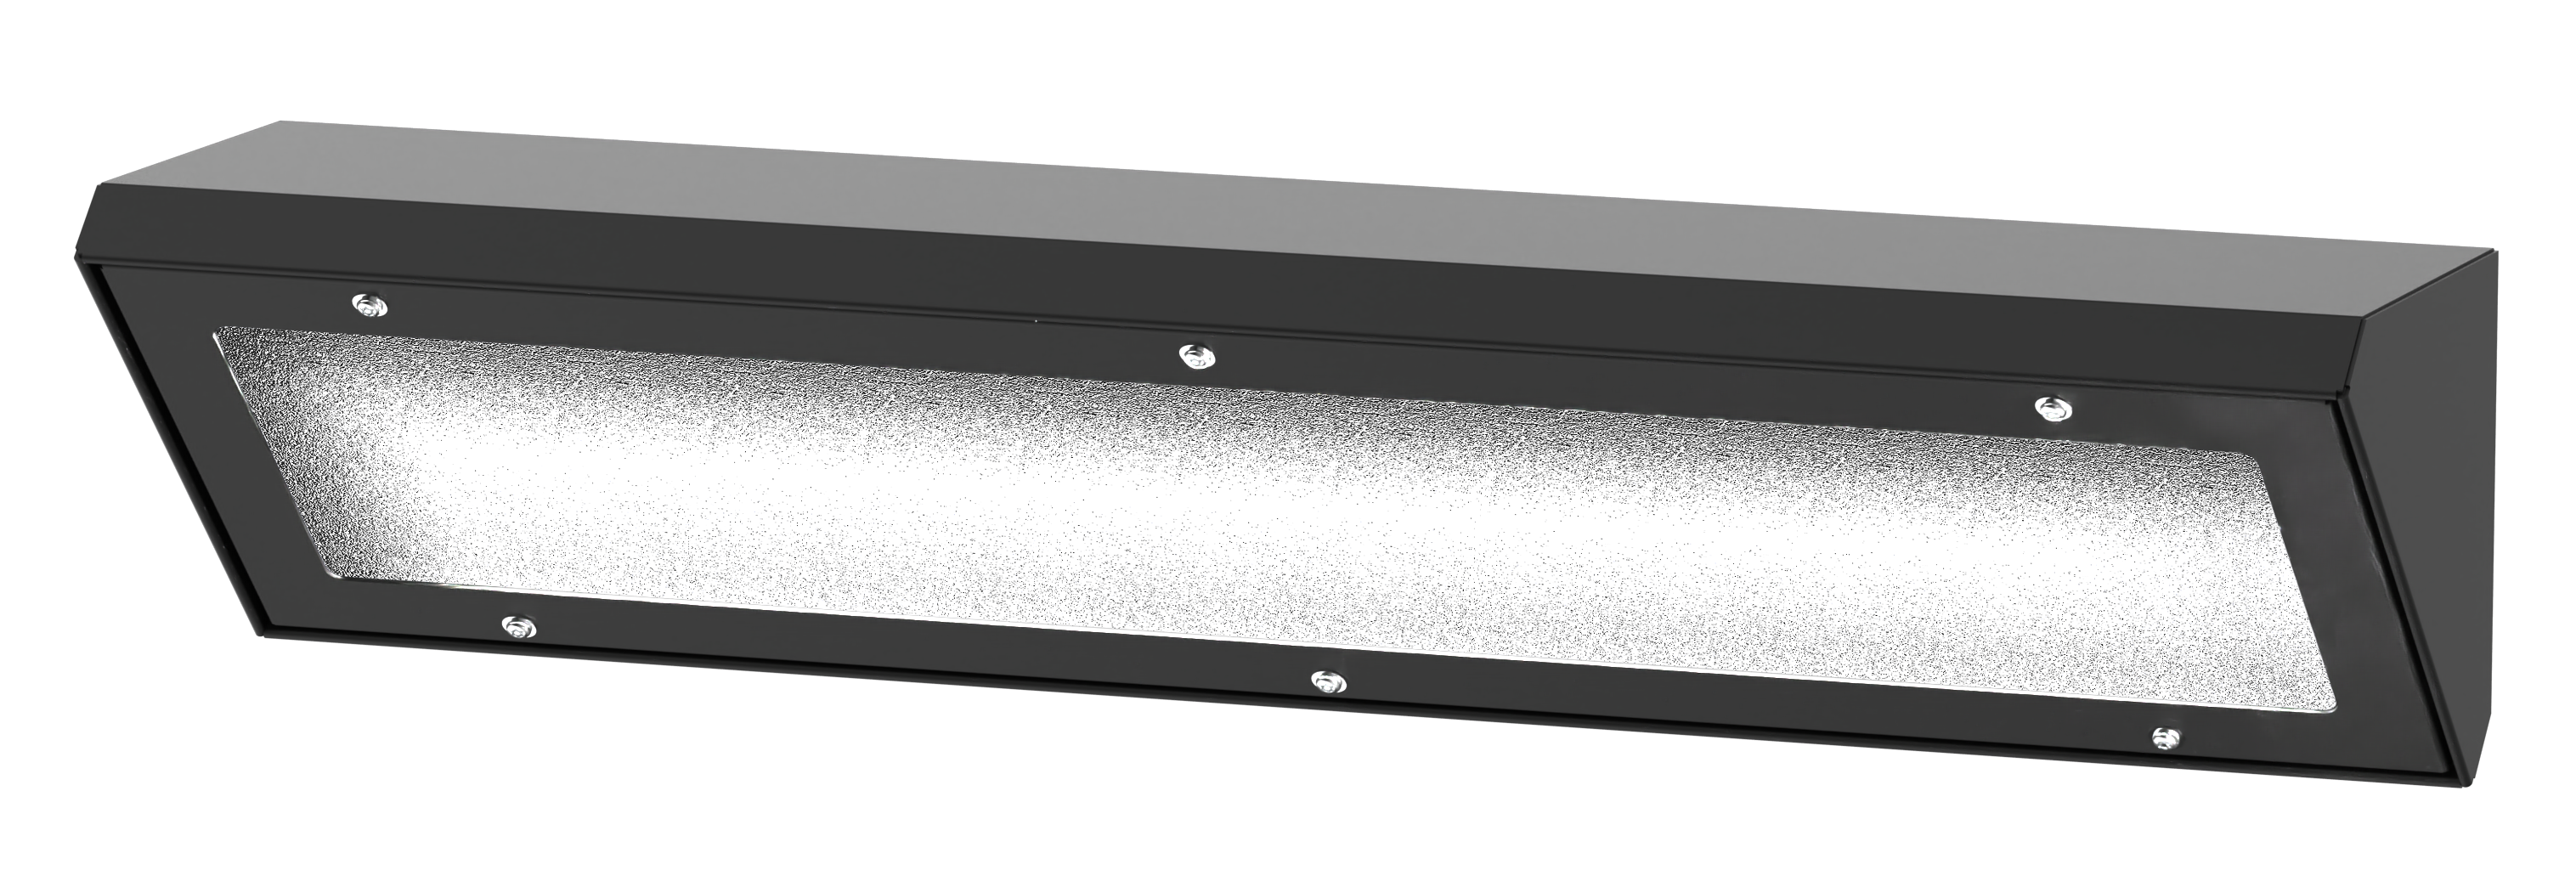 Wandaloodporna oprawa oświetleniowa INV320LED